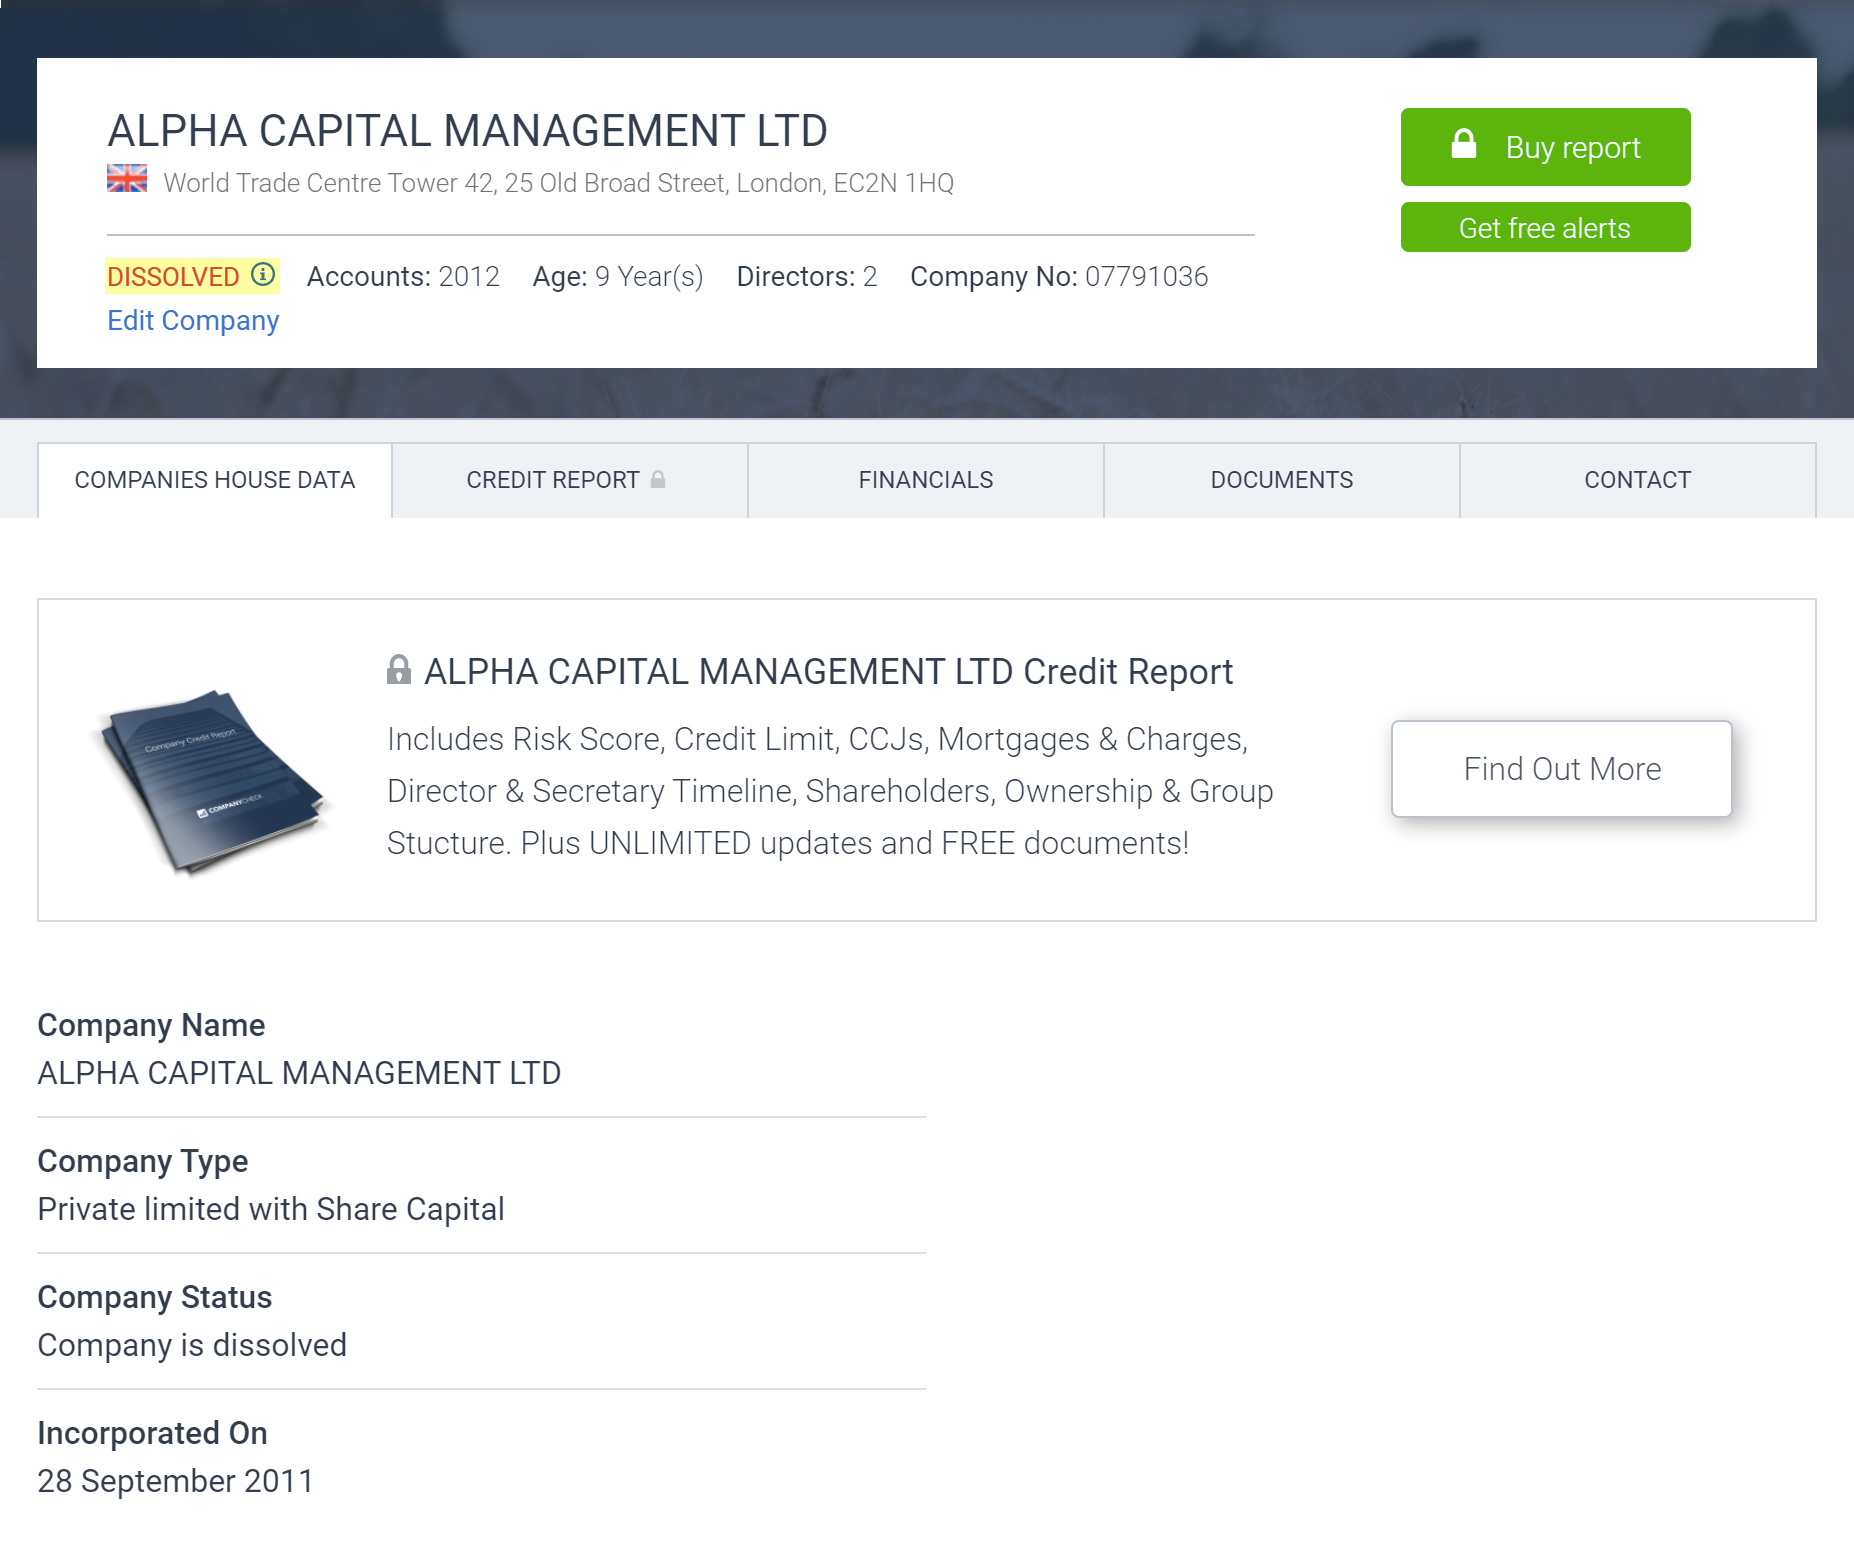 При этом компания Alpha Capital Management, которая значится в списке должностных лиц ATT Investments, уже ликвидирована